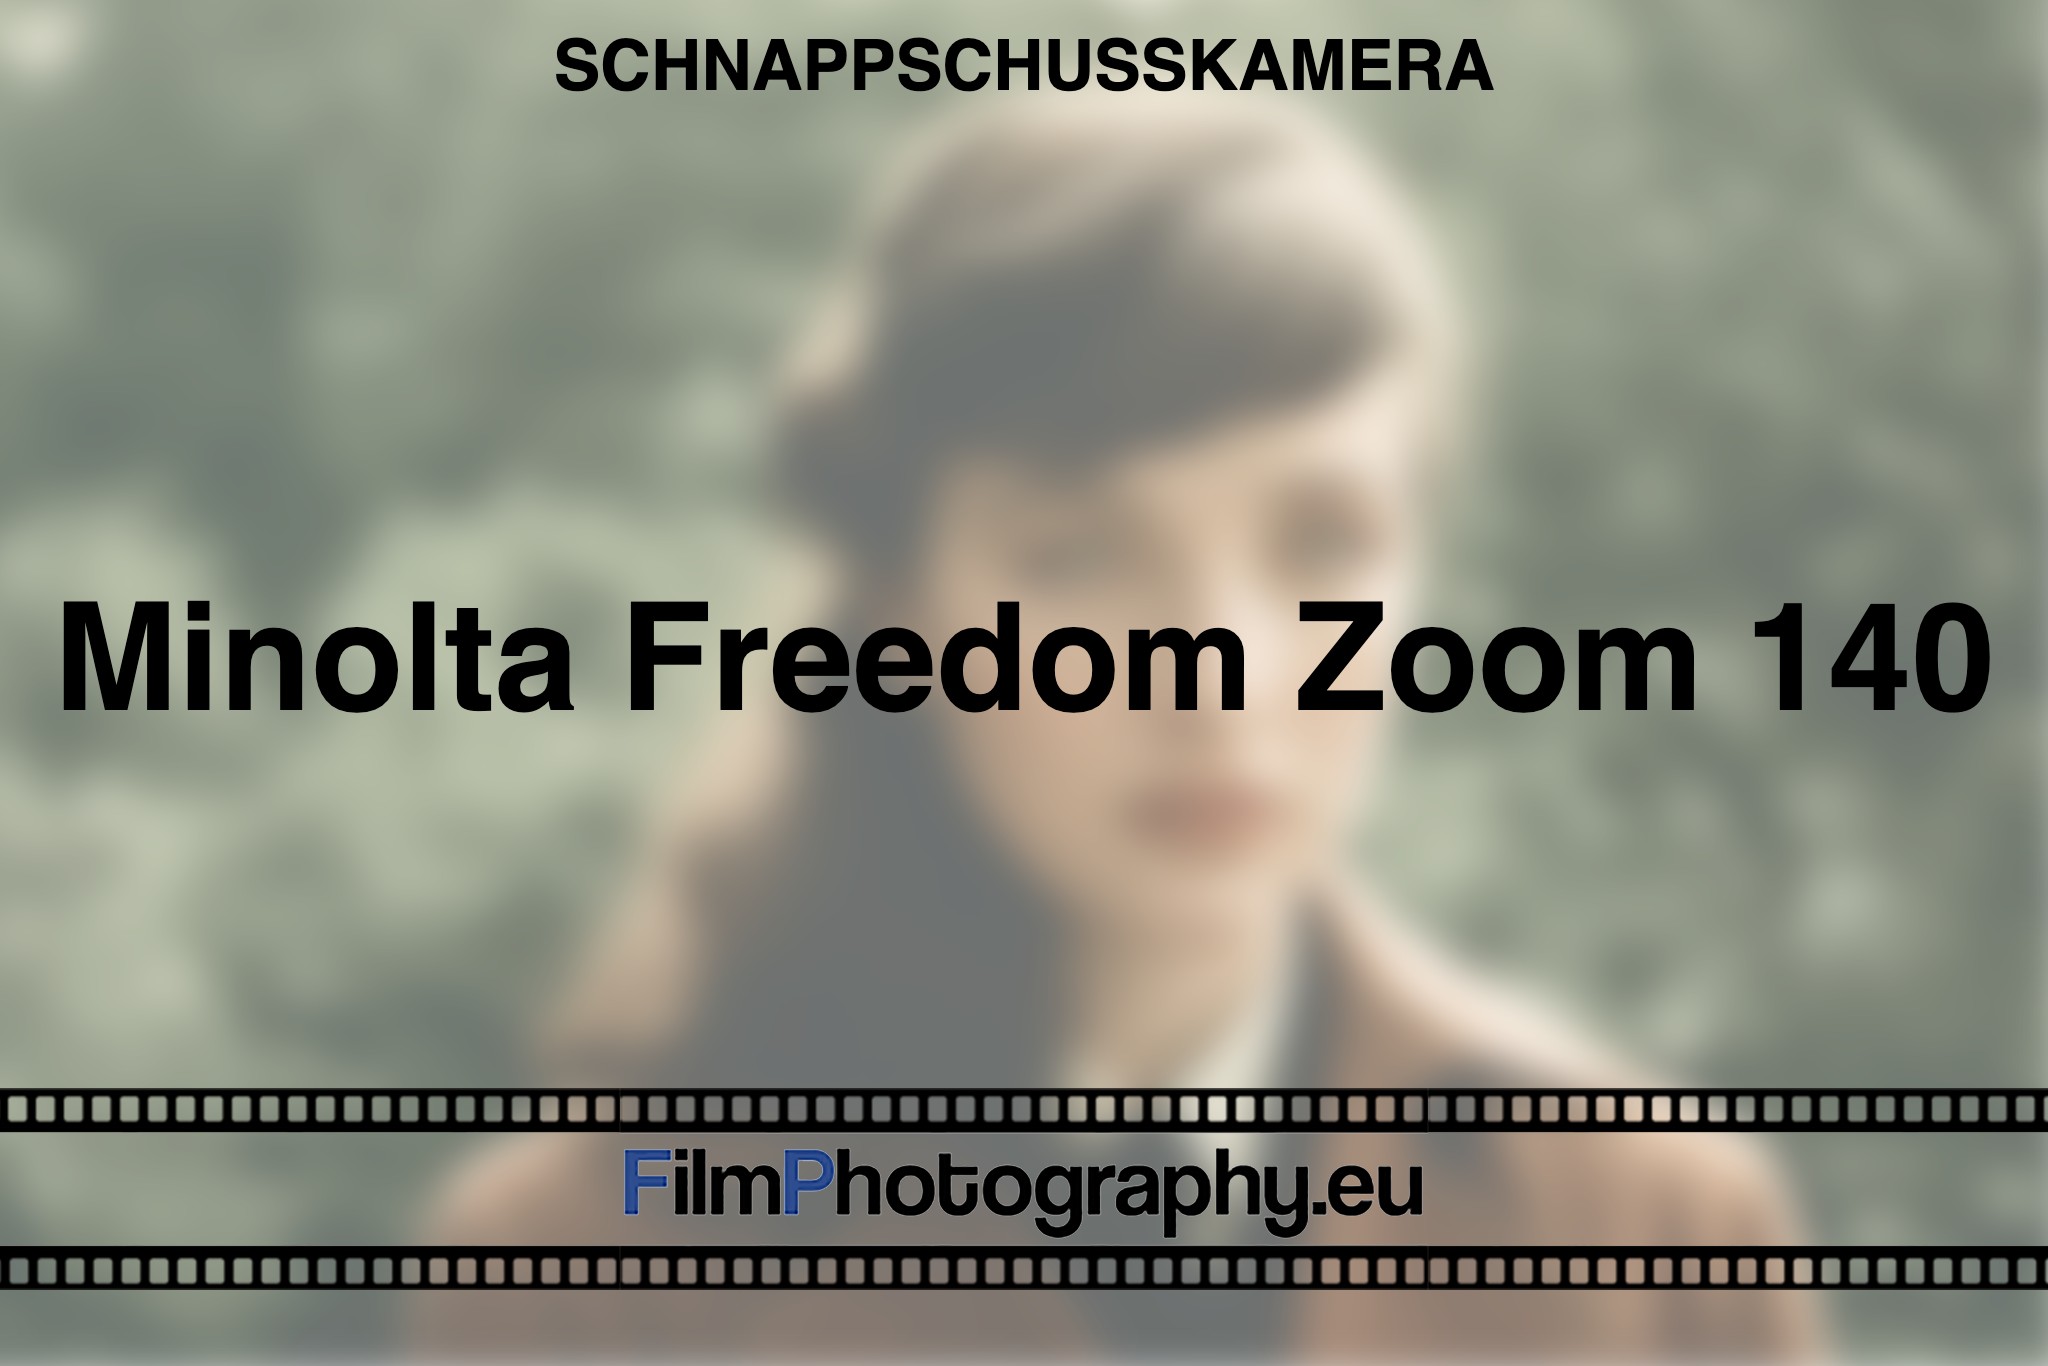 minolta-freedom-zoom-140-schnappschusskamera-bnv